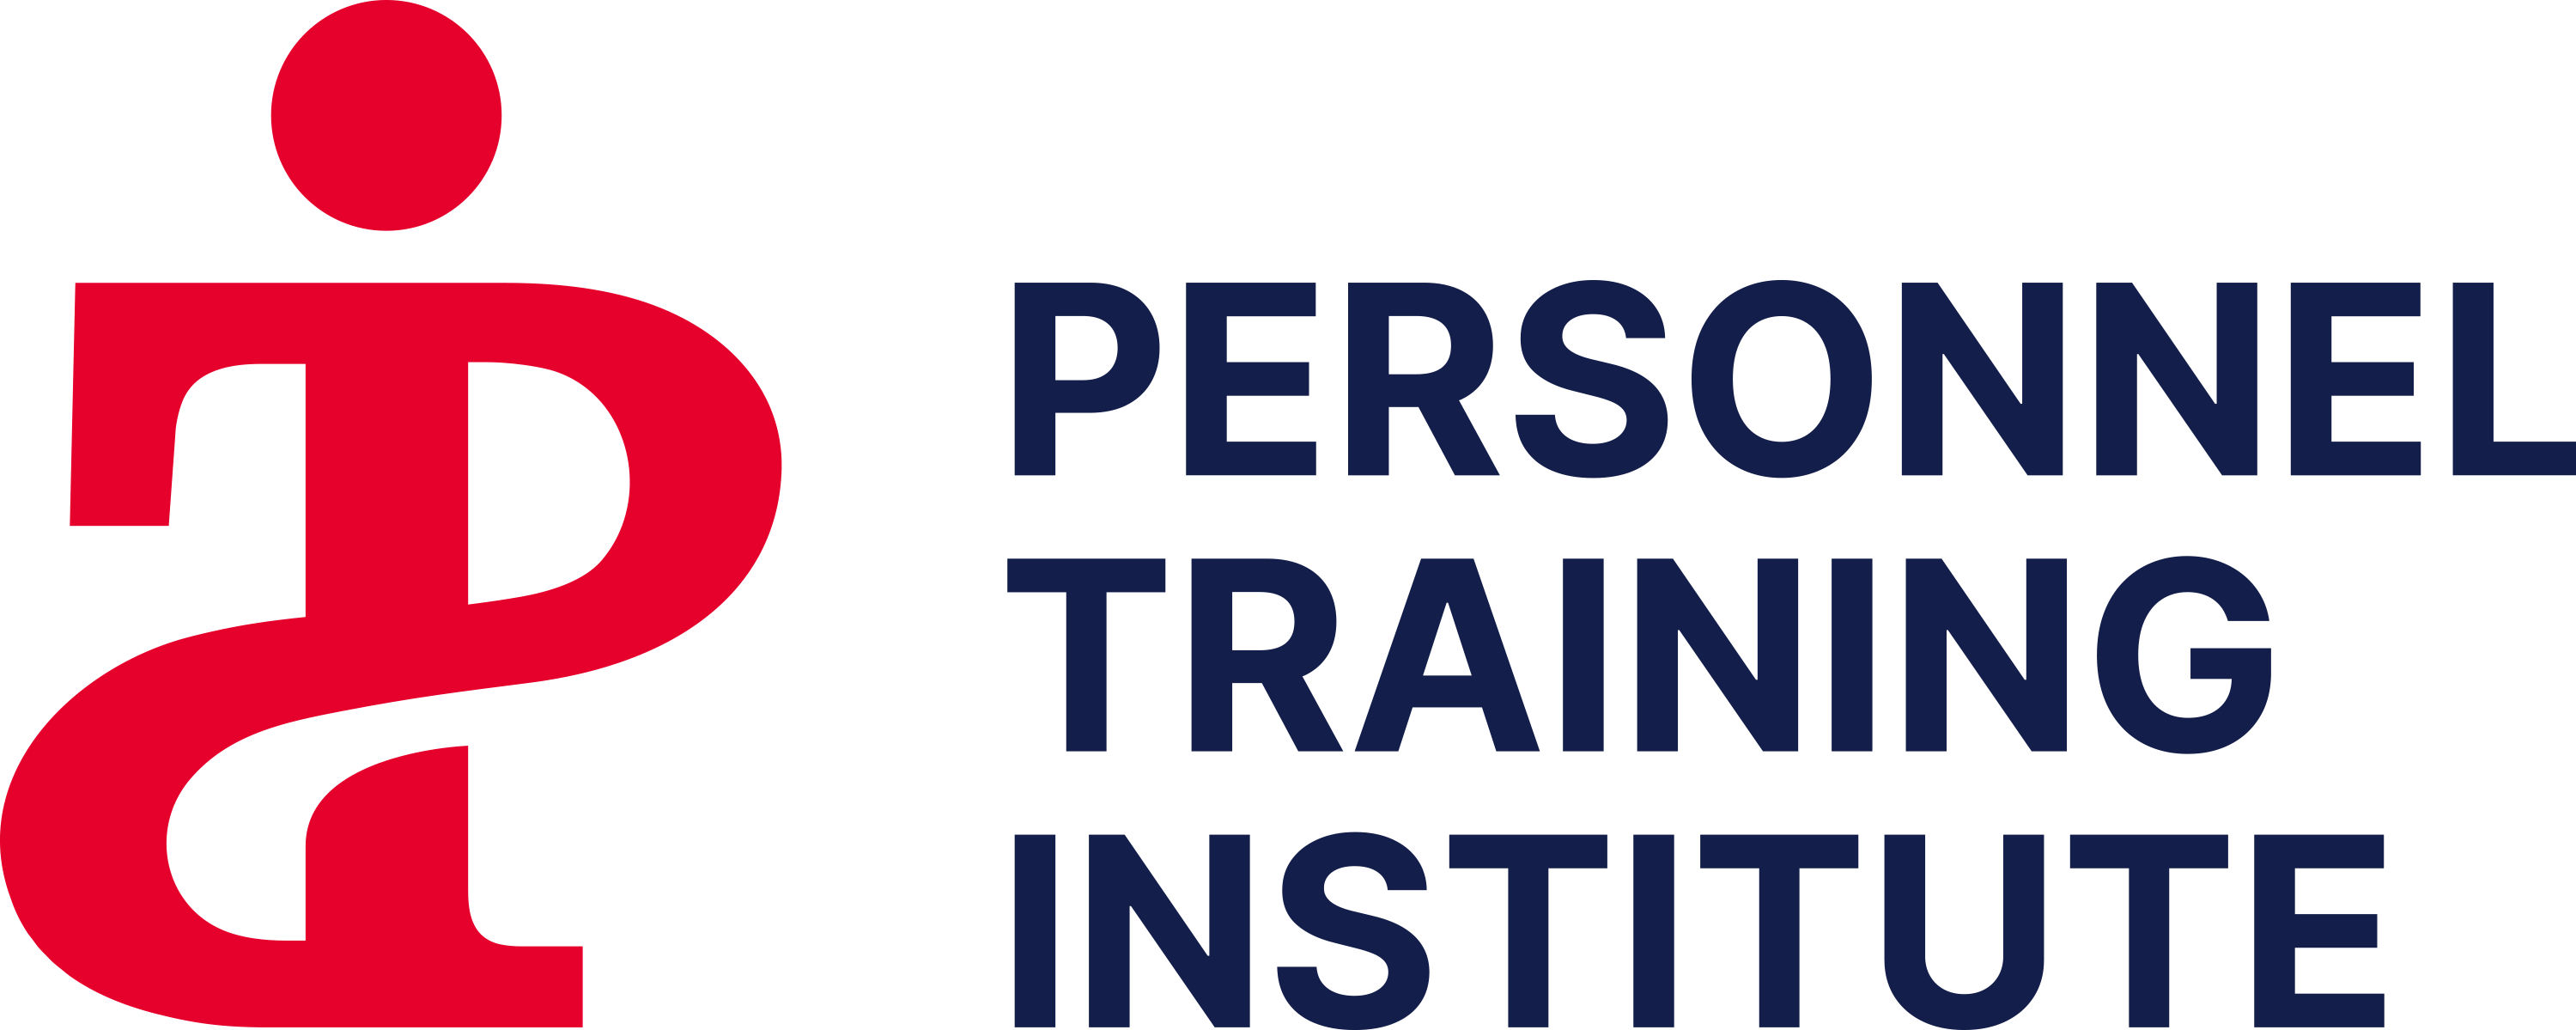 Personnel Training Institute